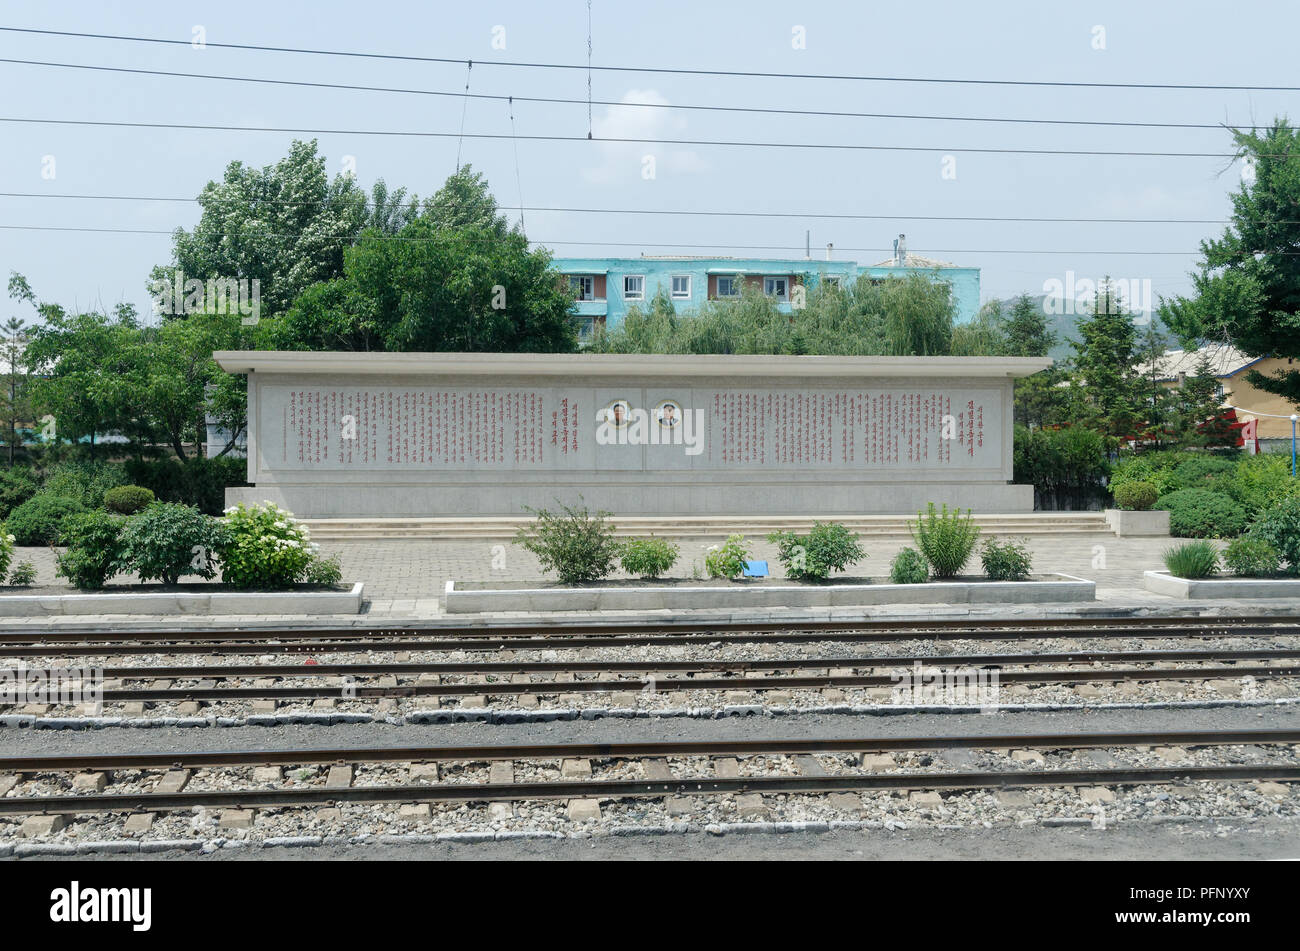 Portraits De Kim Ii Sung Et Kim Jong Il Ornent Chaque Train Gare A La Coree Du Nord Souvent Avec Des Citations De Leur Sagesse Avec Eux Photo Stock Alamy